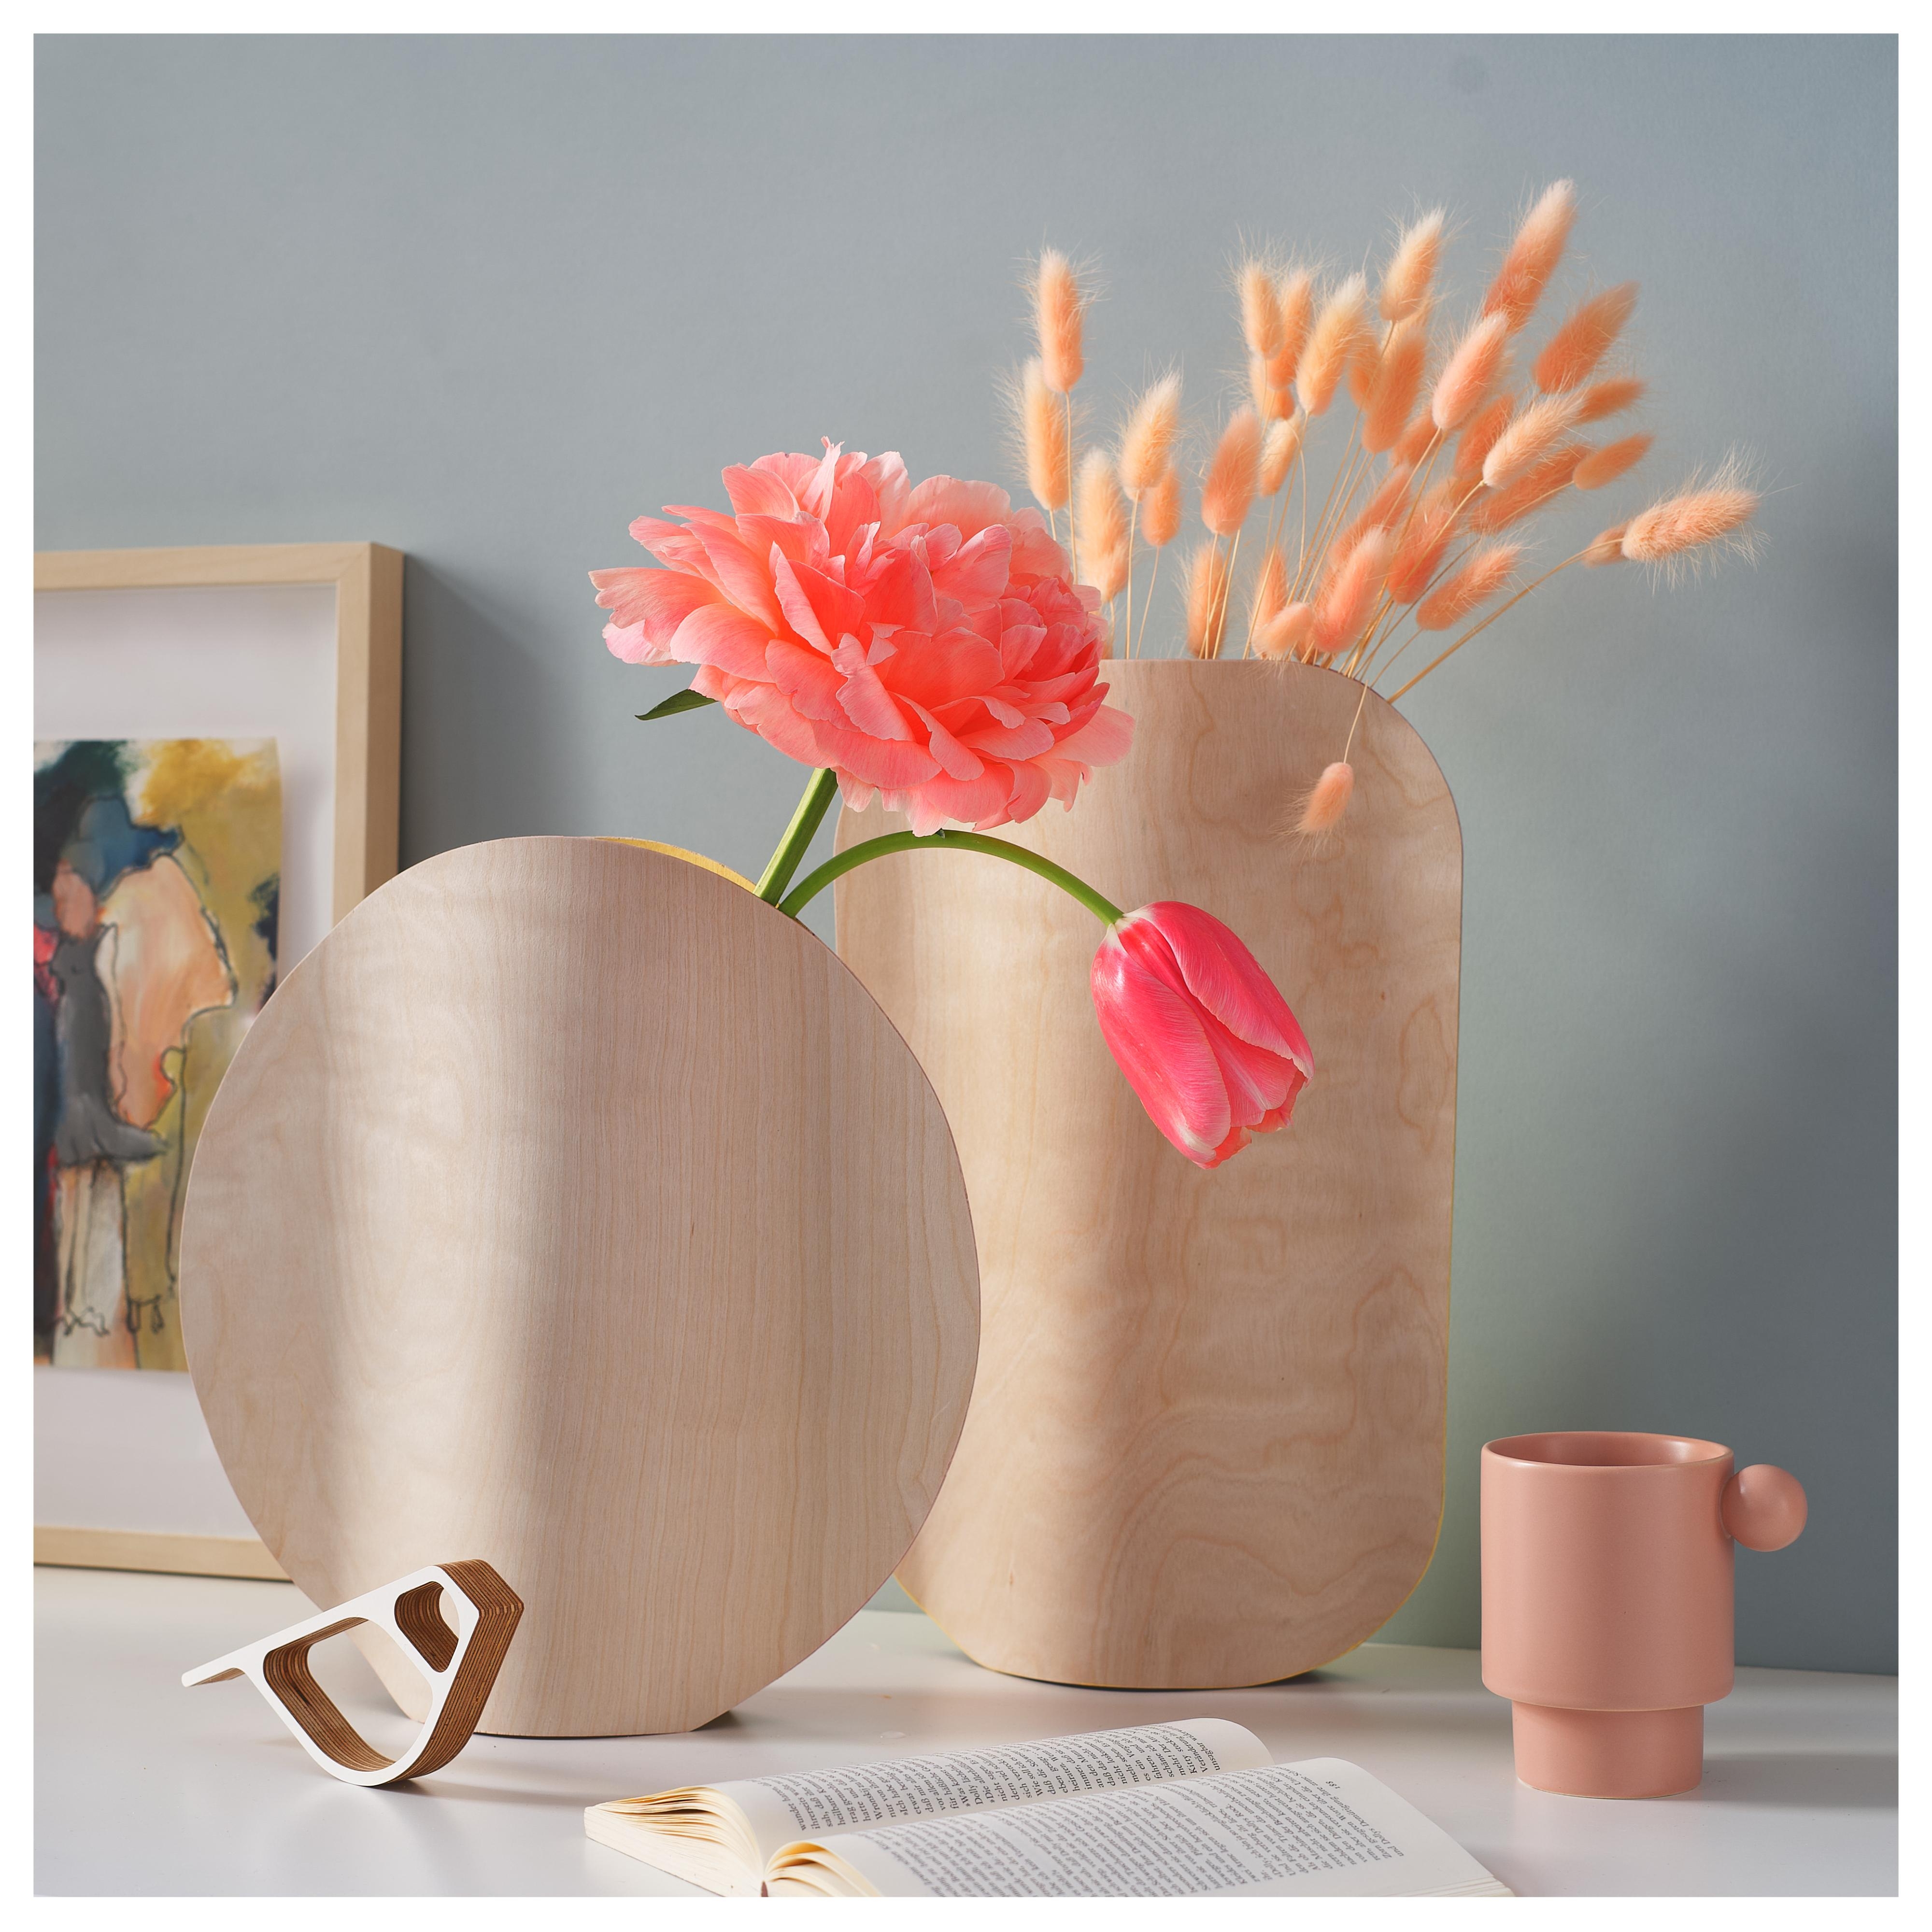 Moderne Vasen zum selber machen!
Ganz einfach und ohne viel Werkzeug, könnt ihr diese beiden Zuhause nachbauen!